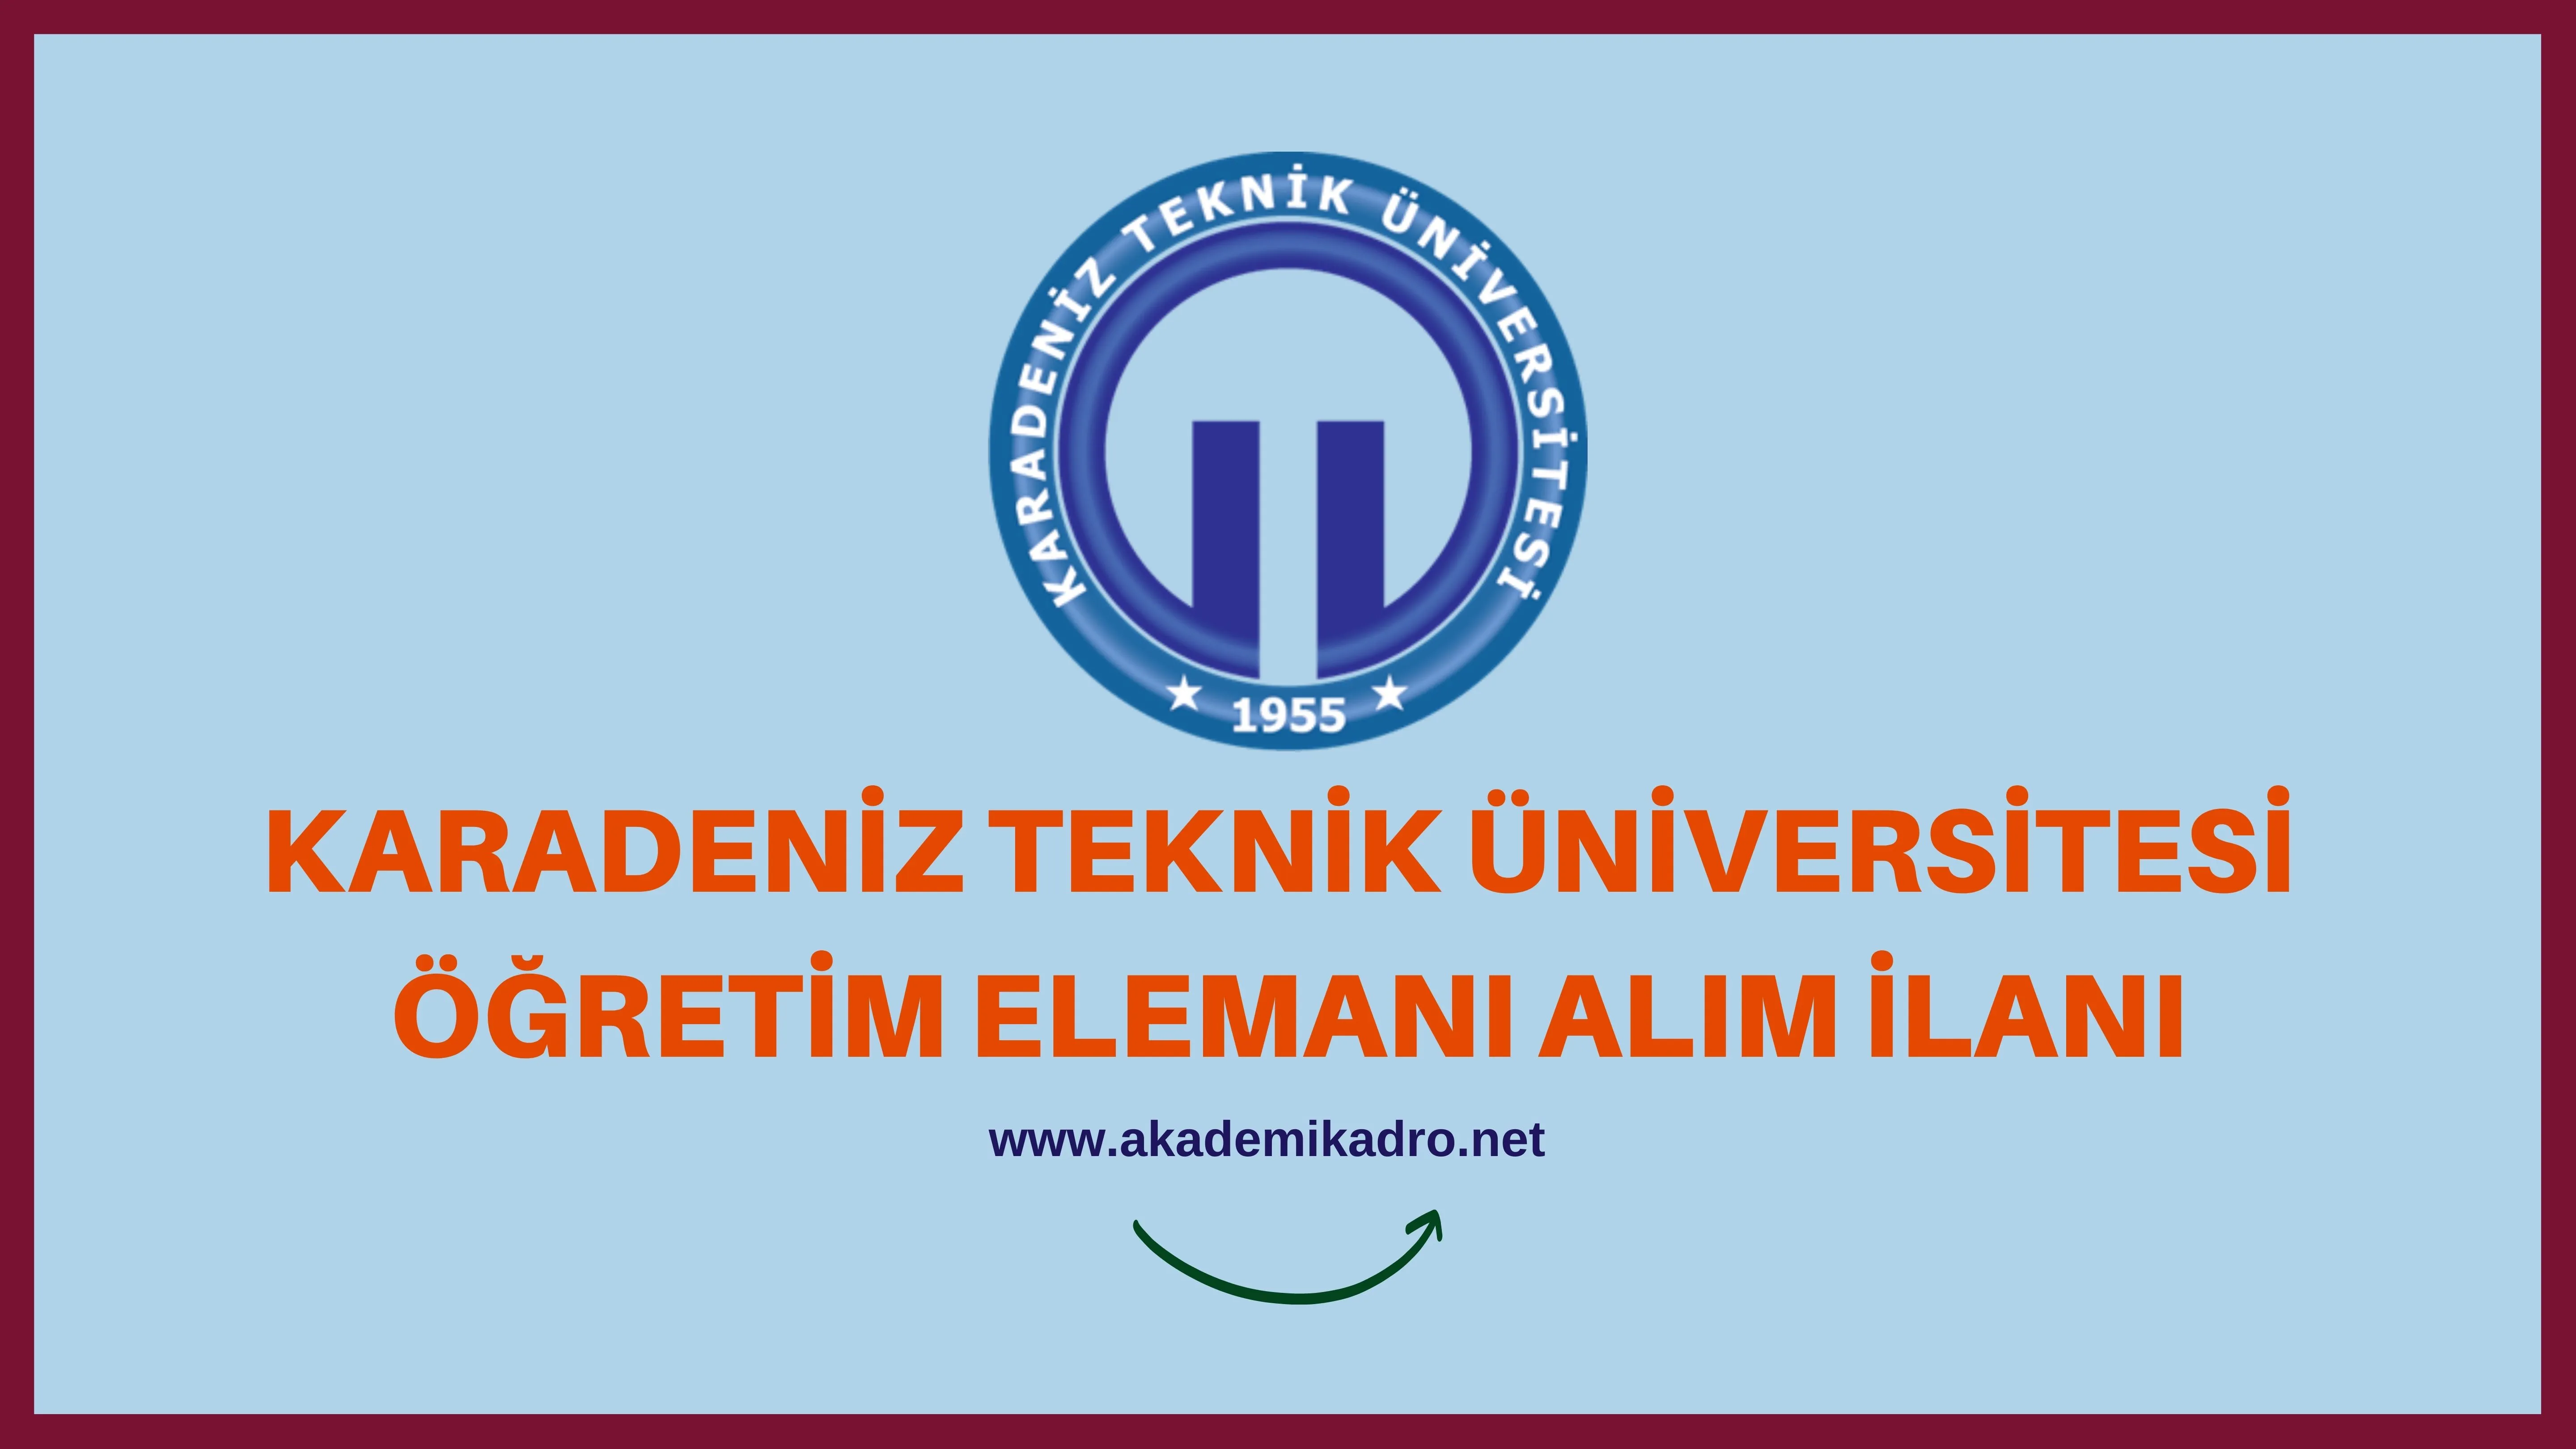 Karadeniz Teknik Üniversitesi 92 öğretim üyesi, 8 Araştırma görevlisi ve 2 öğretim görevlisi alacaktır.